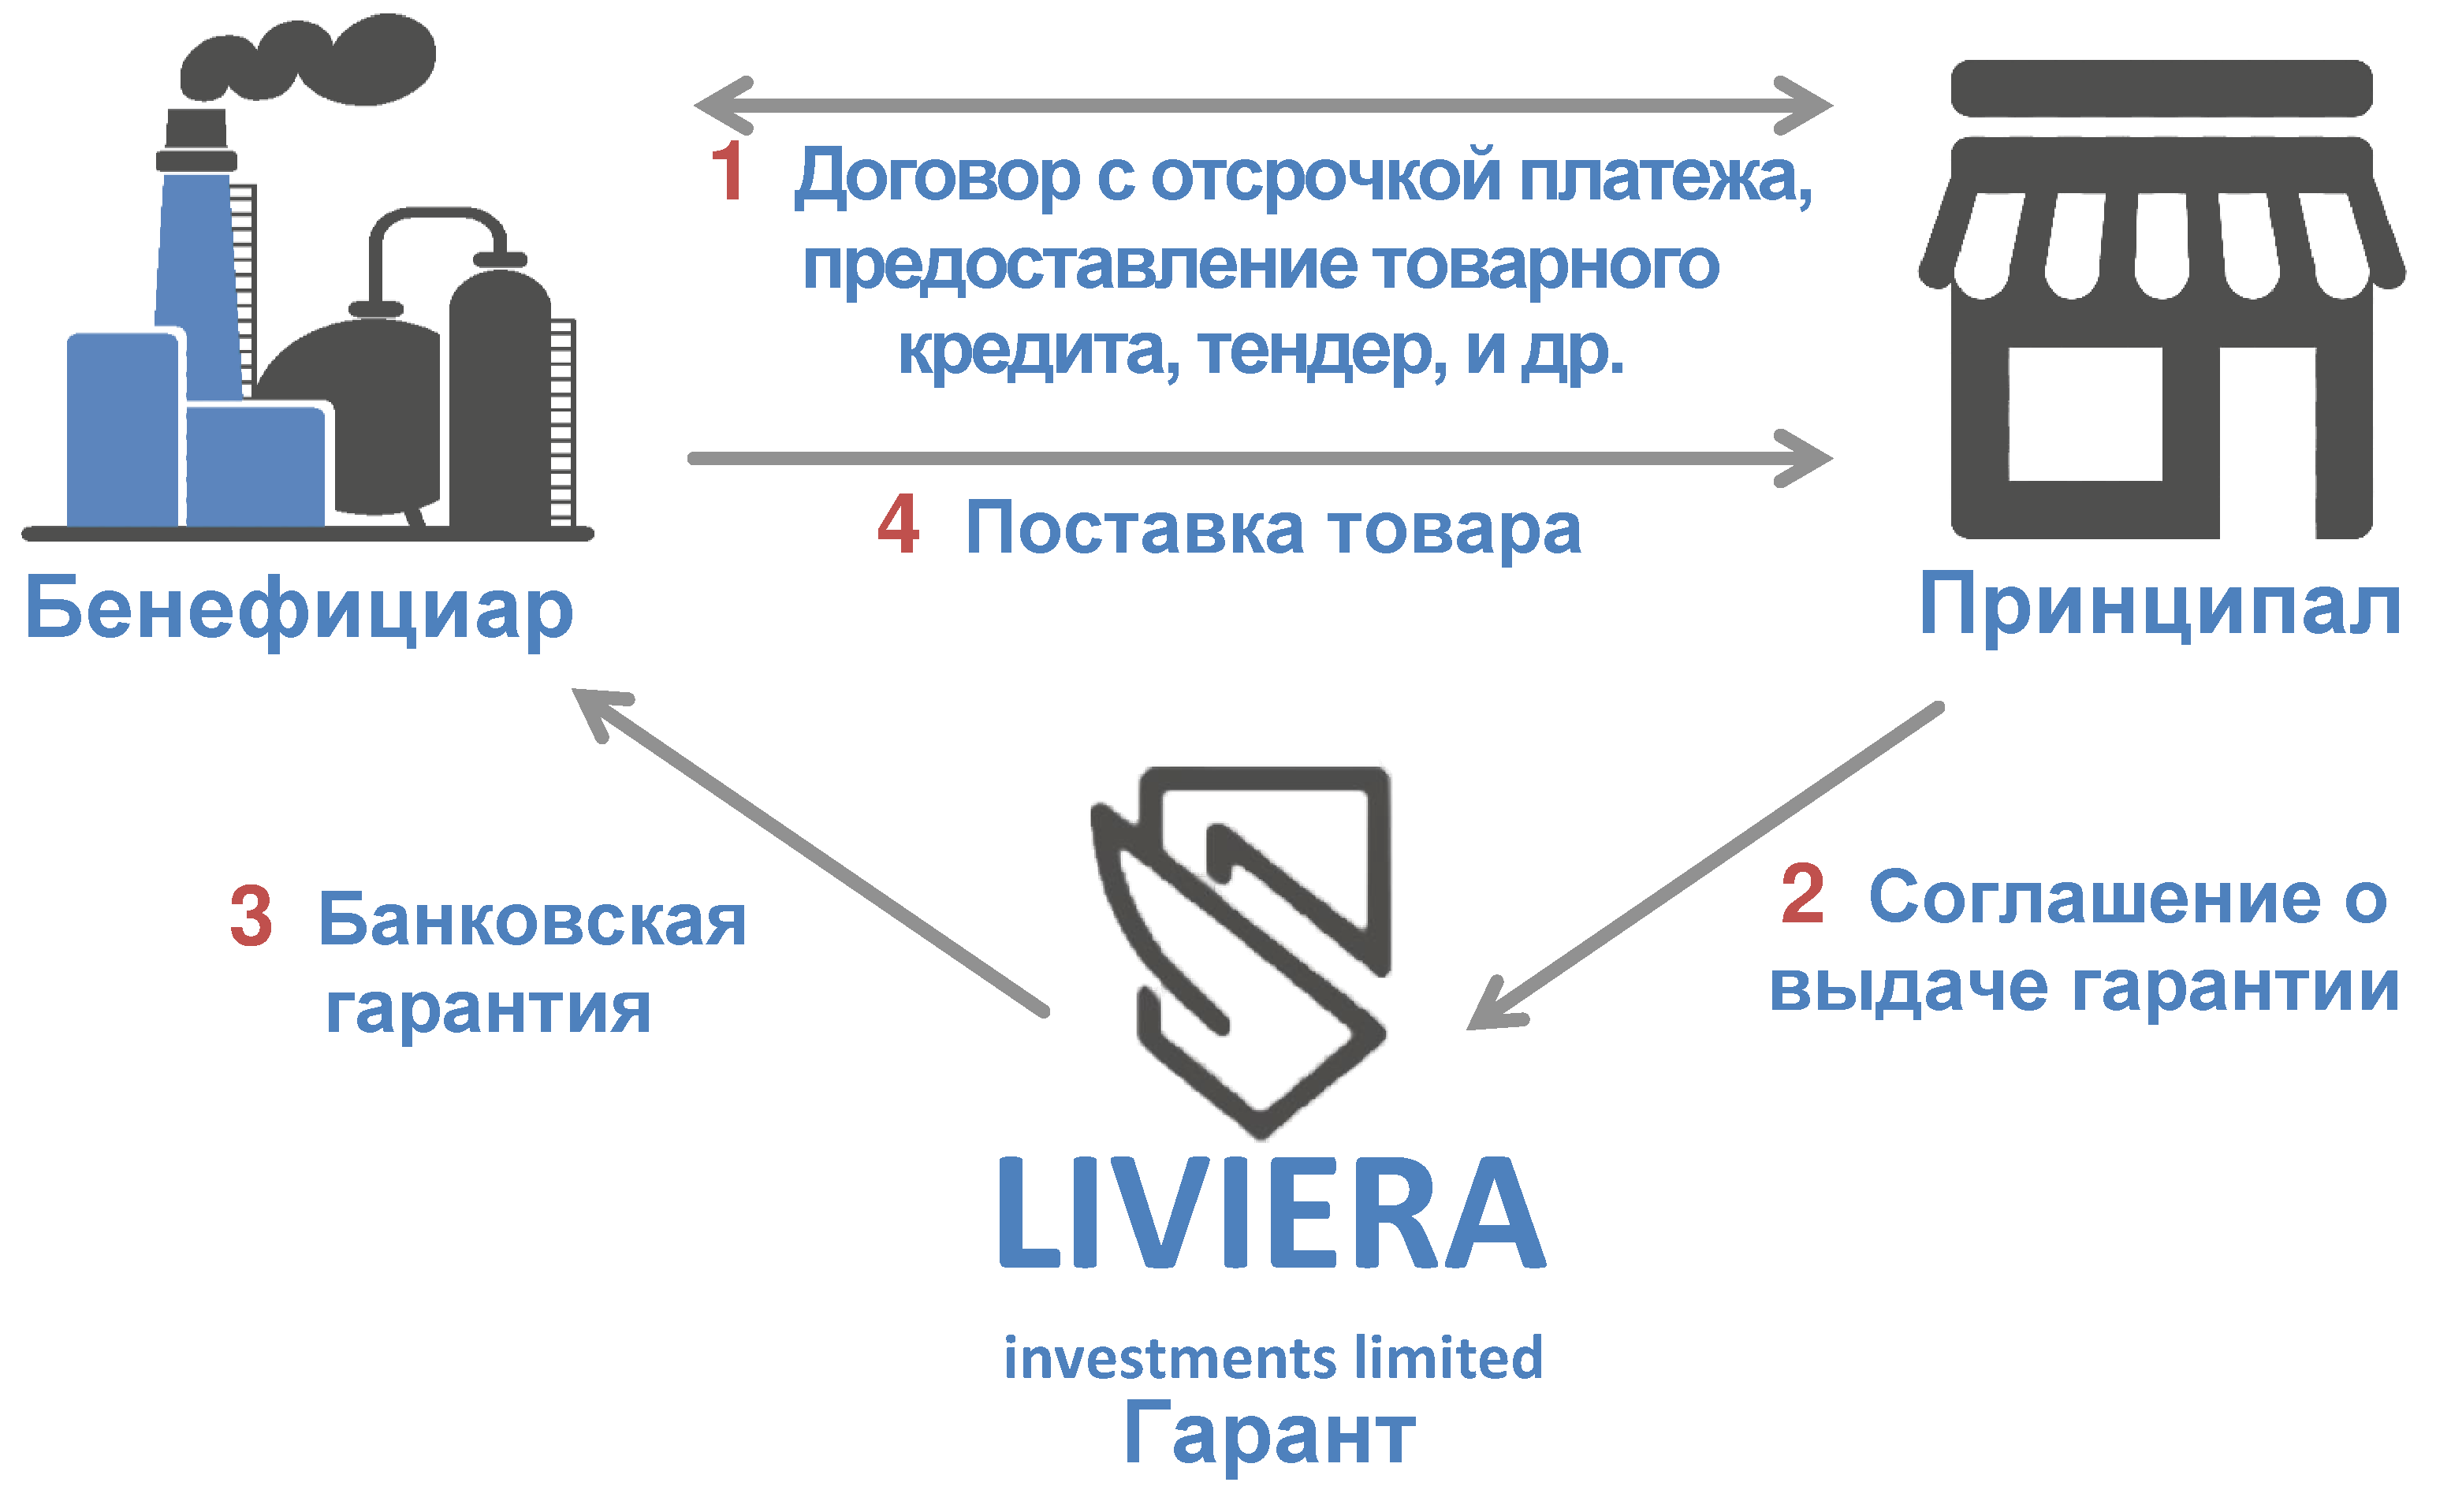 Схема работы банковской гарантии c компанией Liviera Investments Ltd